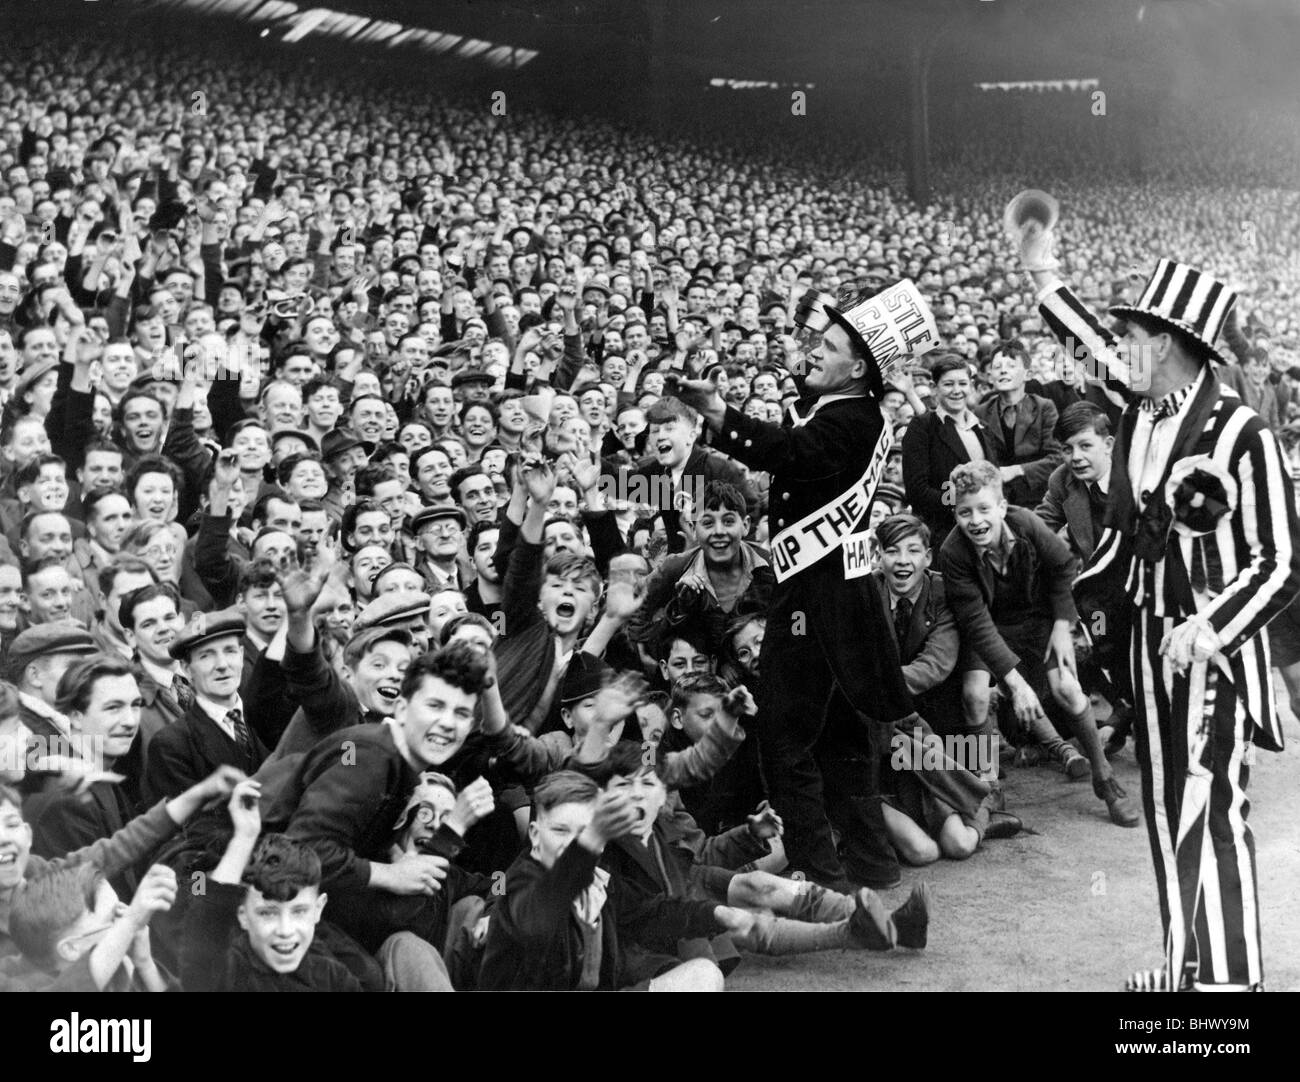 Newcastle-Maskottchen Jimmy Nichol führt der Jubel der Menge vor dem Spiel Newcastle mit Sheffield Samstag, 30. April 1949 in den vierziger und fünfziger Jahre, Uniteds Unterstützung war so phänomenal, wie es jetzt ist. Newcastle ein offizieller Unterstützer-Maskottchen als ein Cheer-Leader in jenen Tagen vorgeführt. Natürlich in schwarz und weiß geschmückt, ist er abgebildet, Orchestrierung der Lieder am Leazes Ende des Stadions Gallowgate. Stockfoto